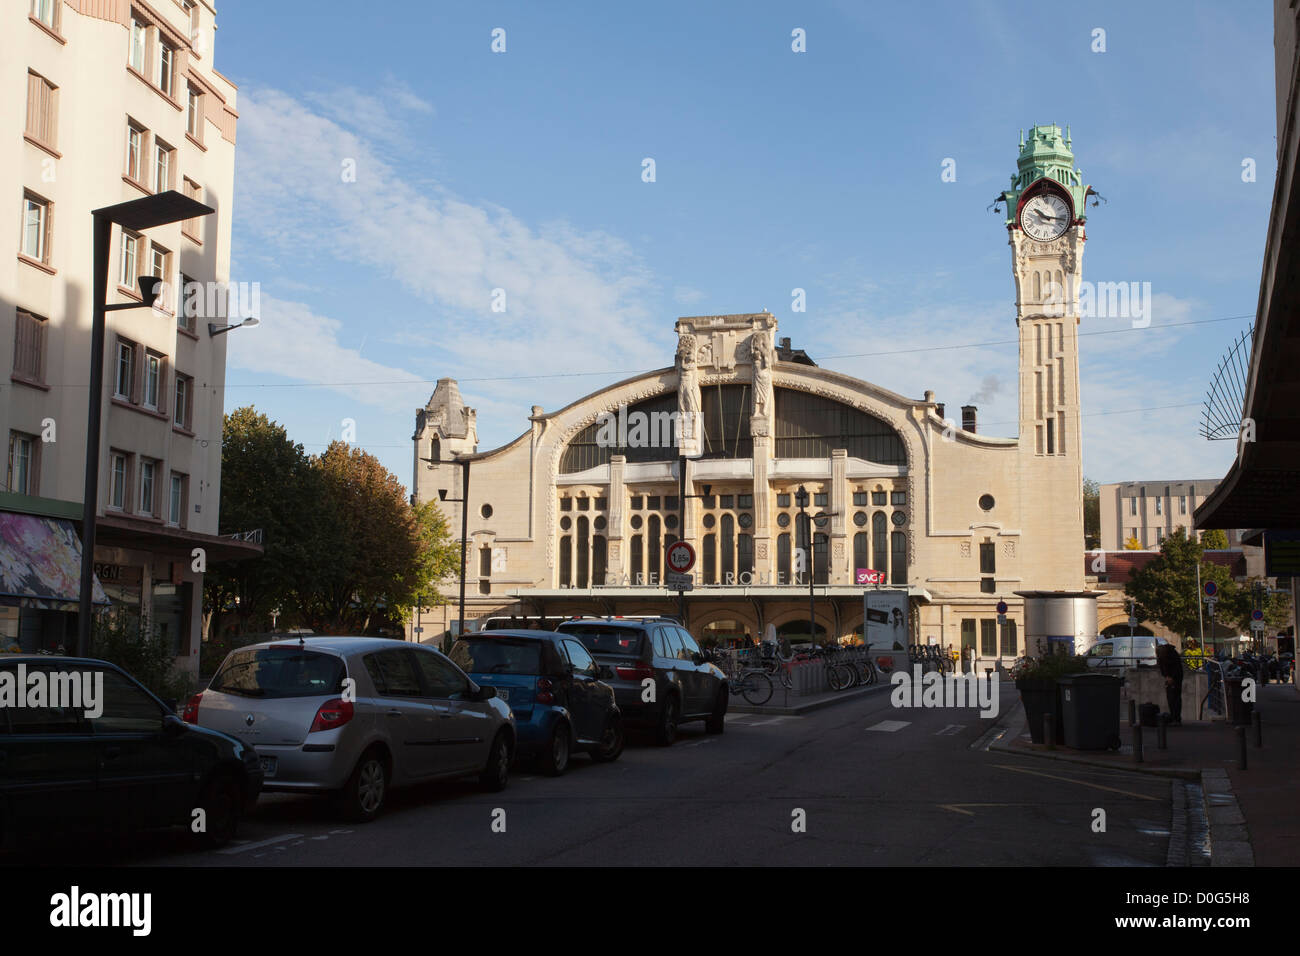 La gare de Rouen-Rive-droite. Rouen, France. Banque D'Images